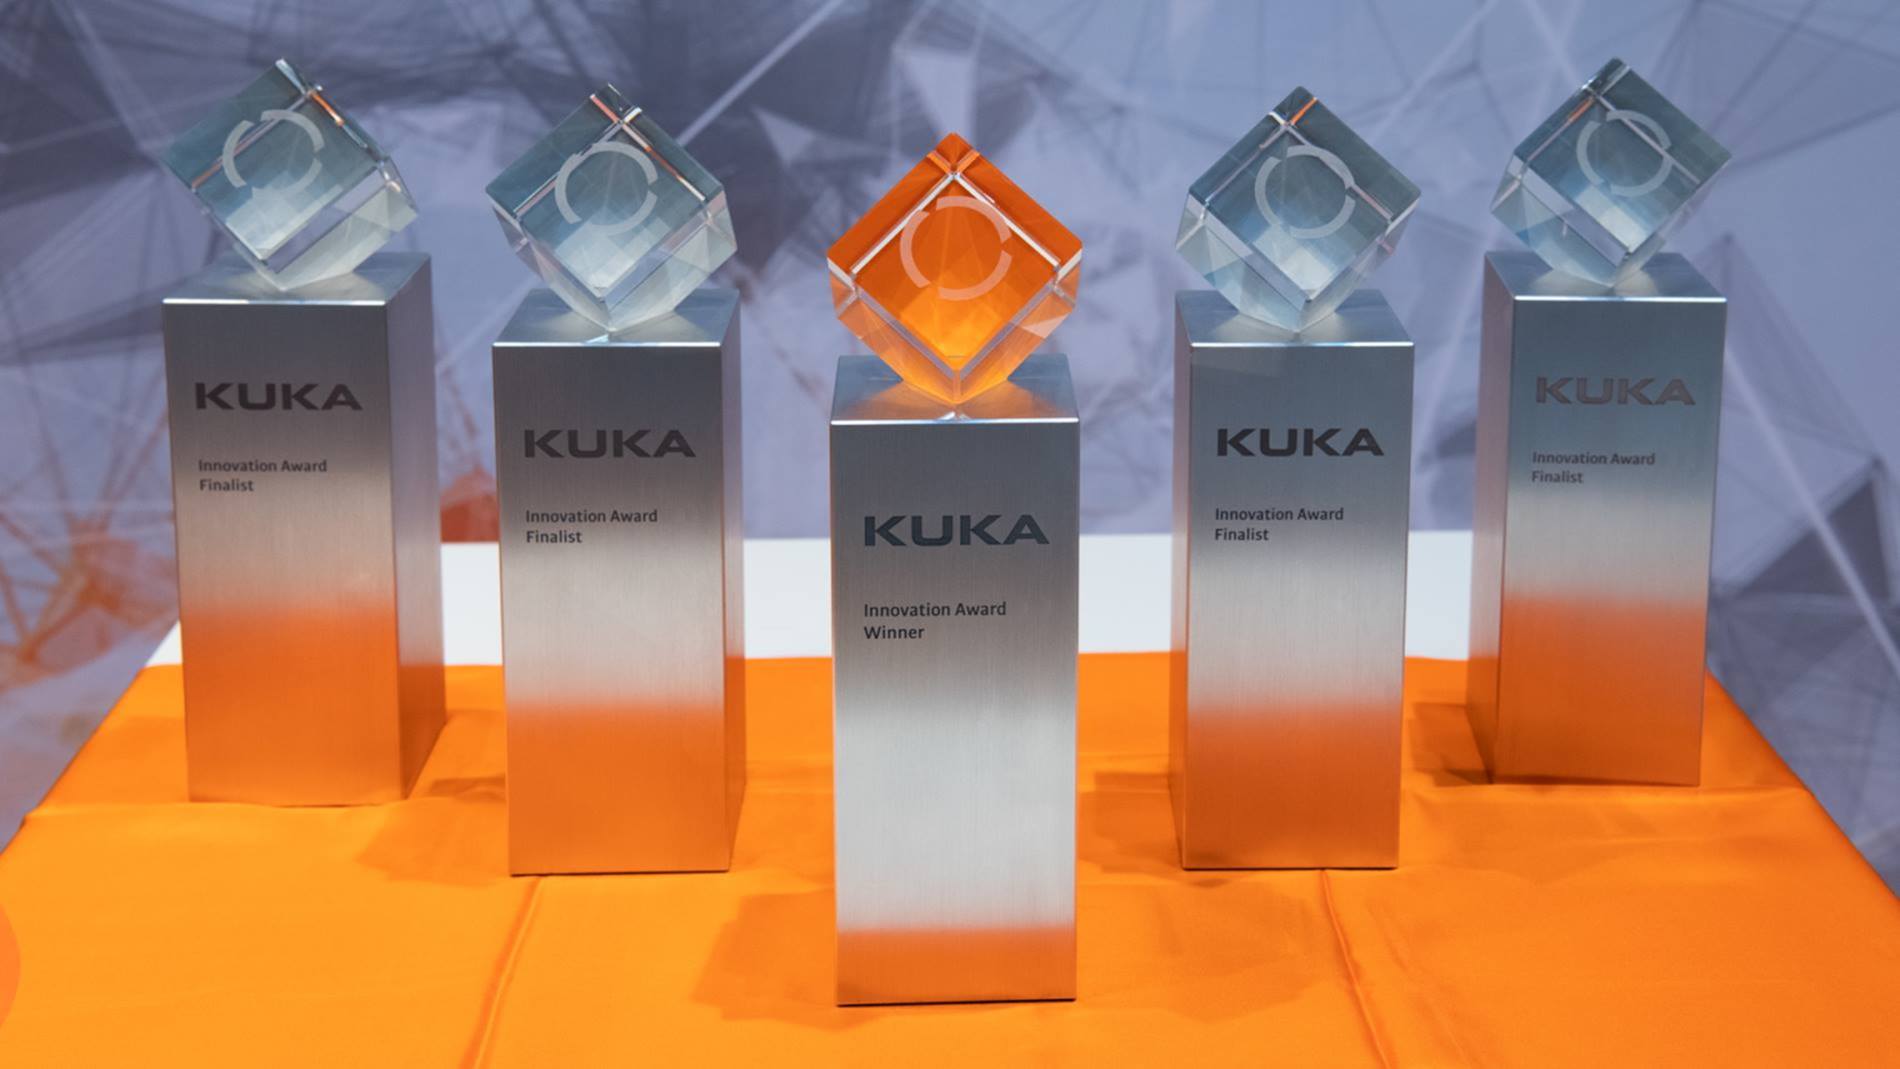 The KUKA Innovation Award.